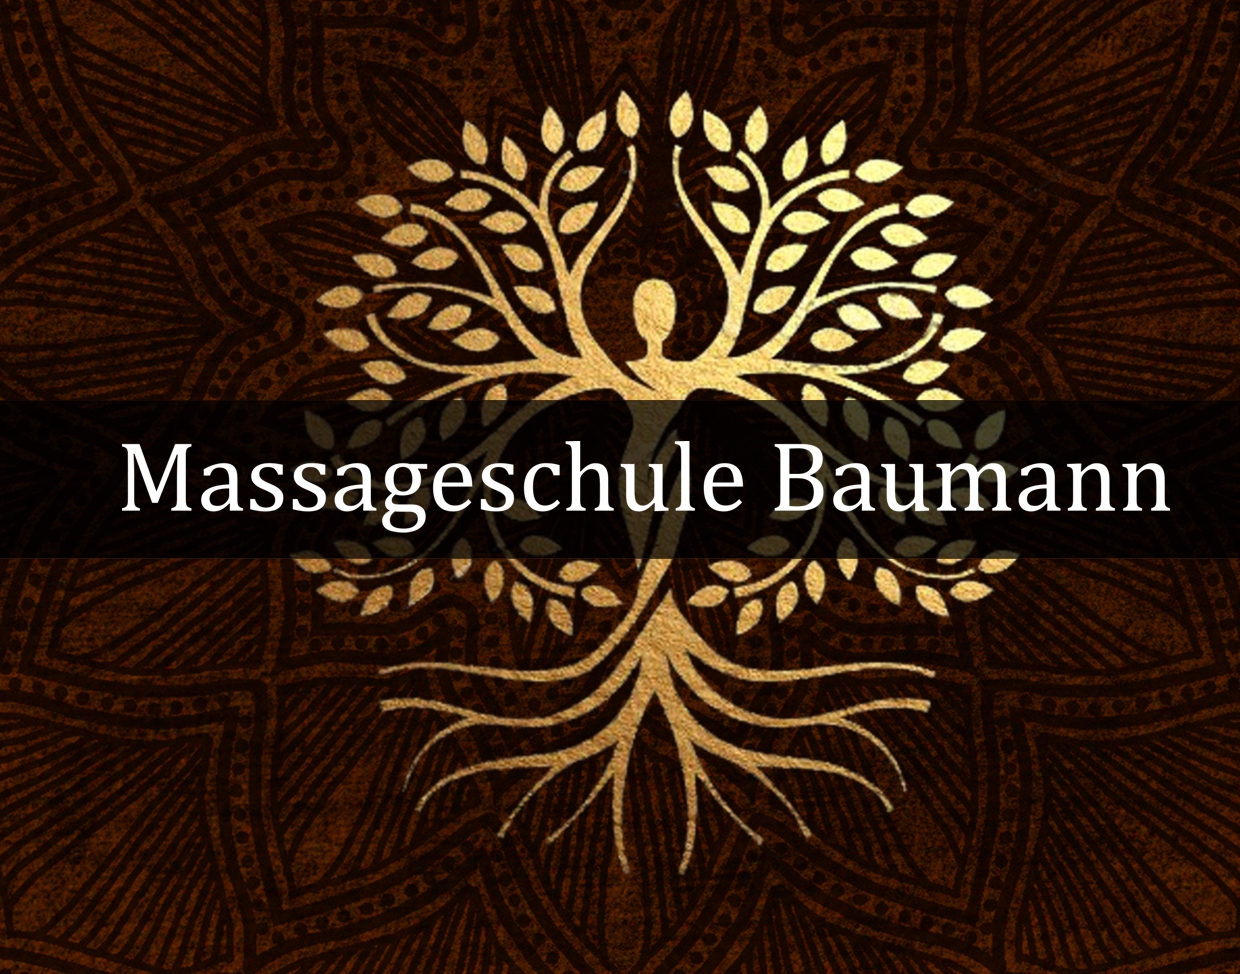 (c) Massageschule-baumann.de